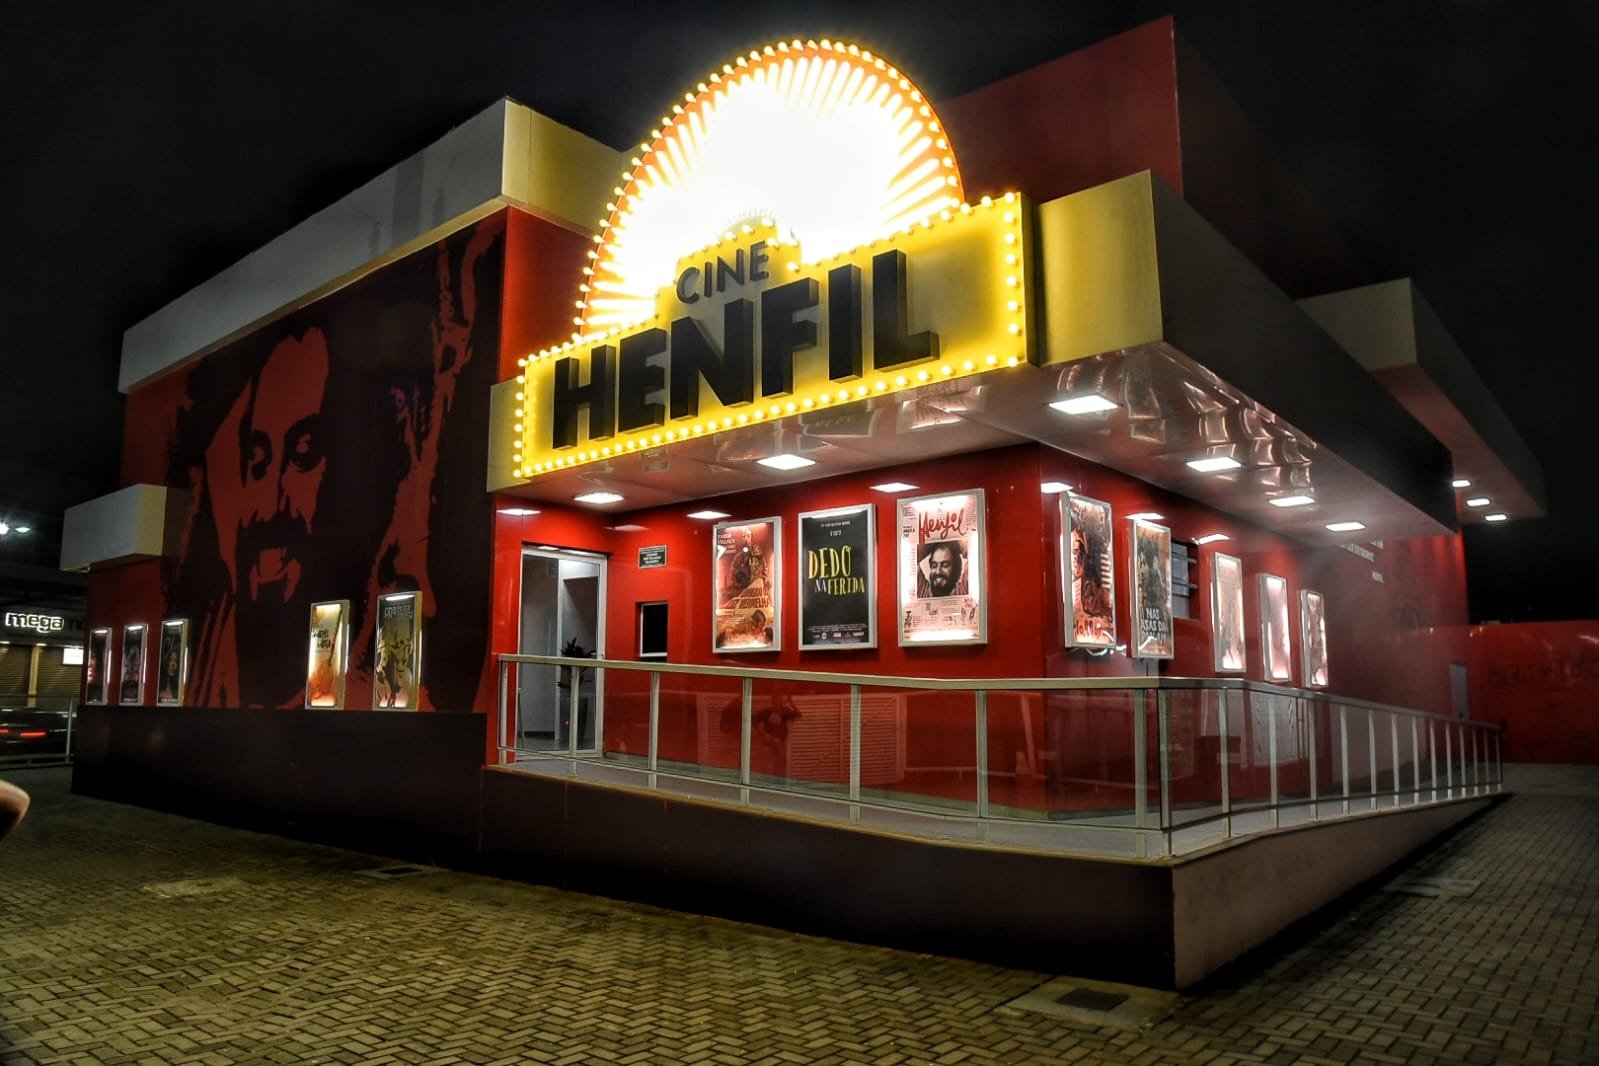 Prefeitura de Maricá divulga programação do Cine Henfil